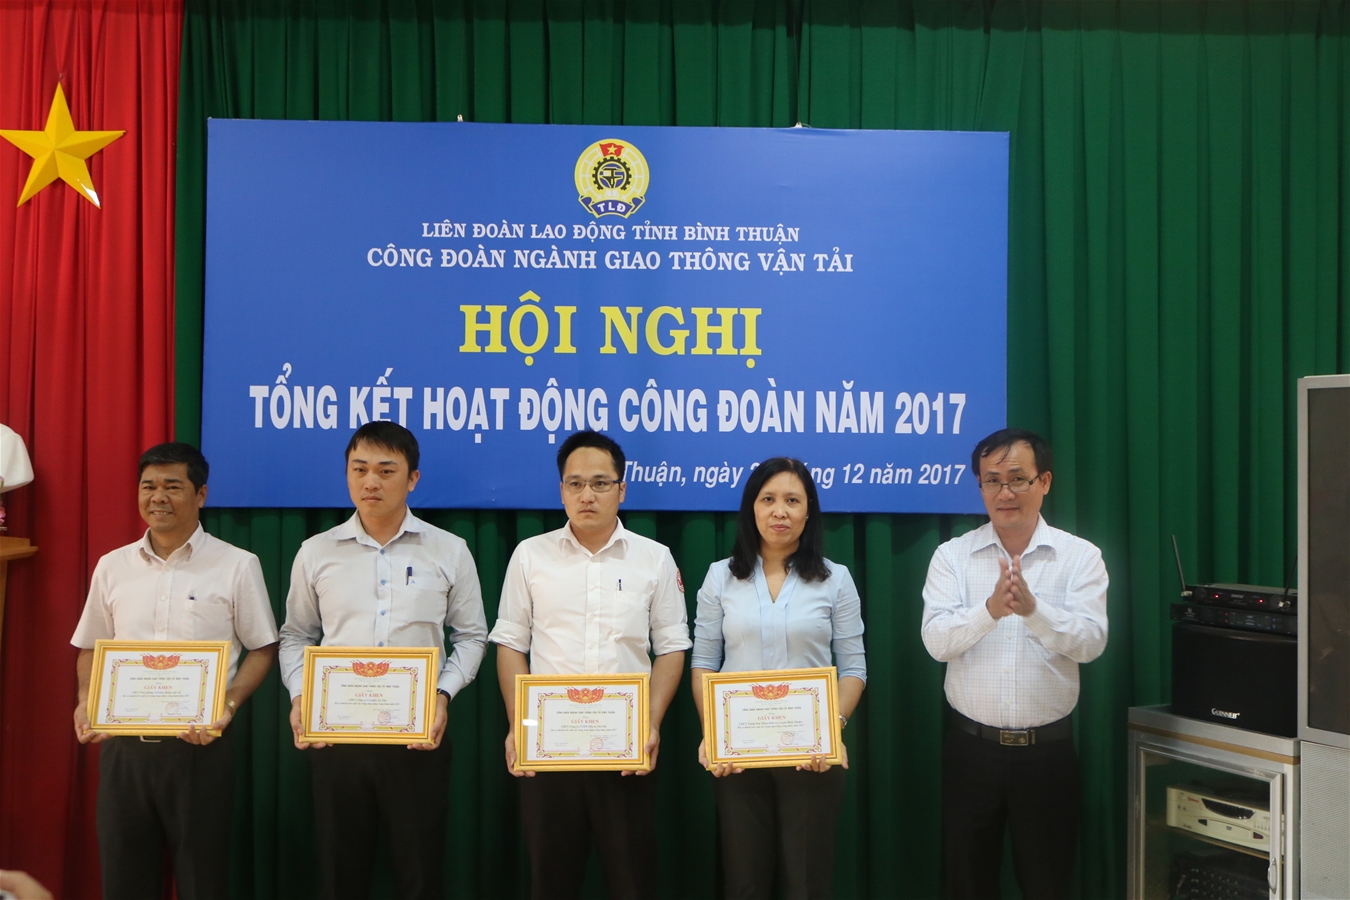 Công đoàn ngành Giao thông vận tải Bình Thuận Tổng kết hoạt động Công đoàn năm 2017.